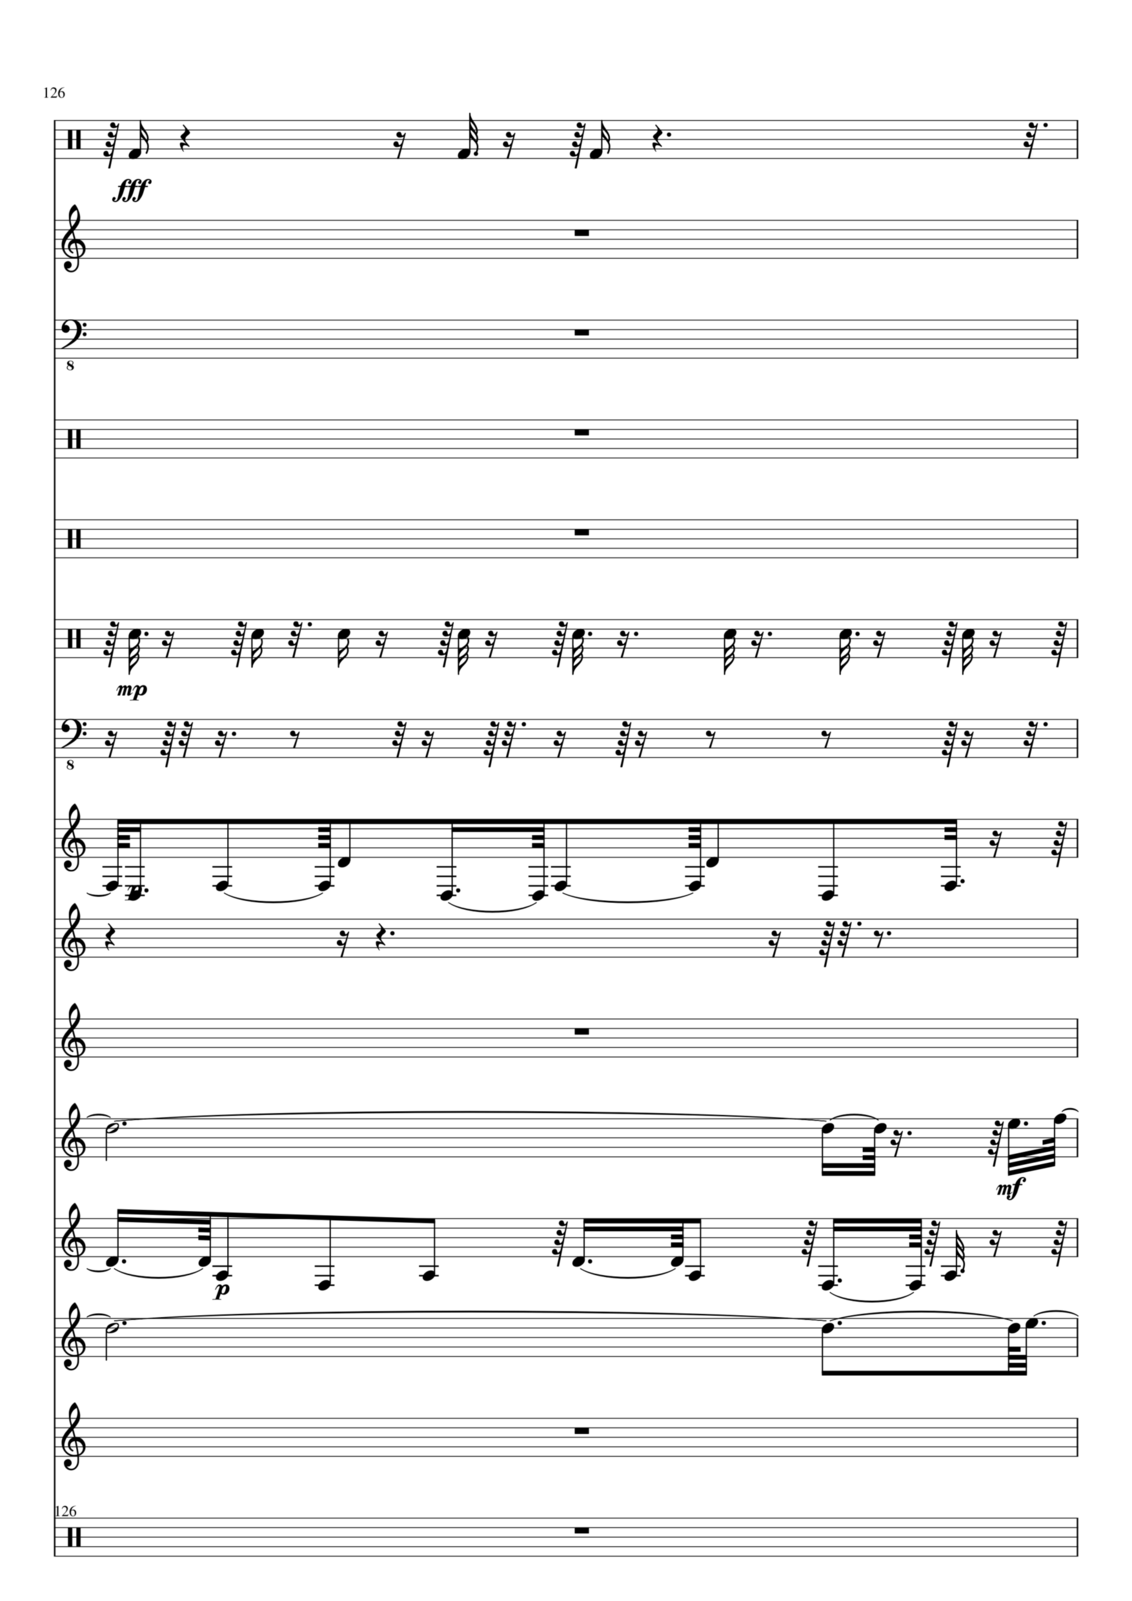 Utro polinyi slide, Image 126